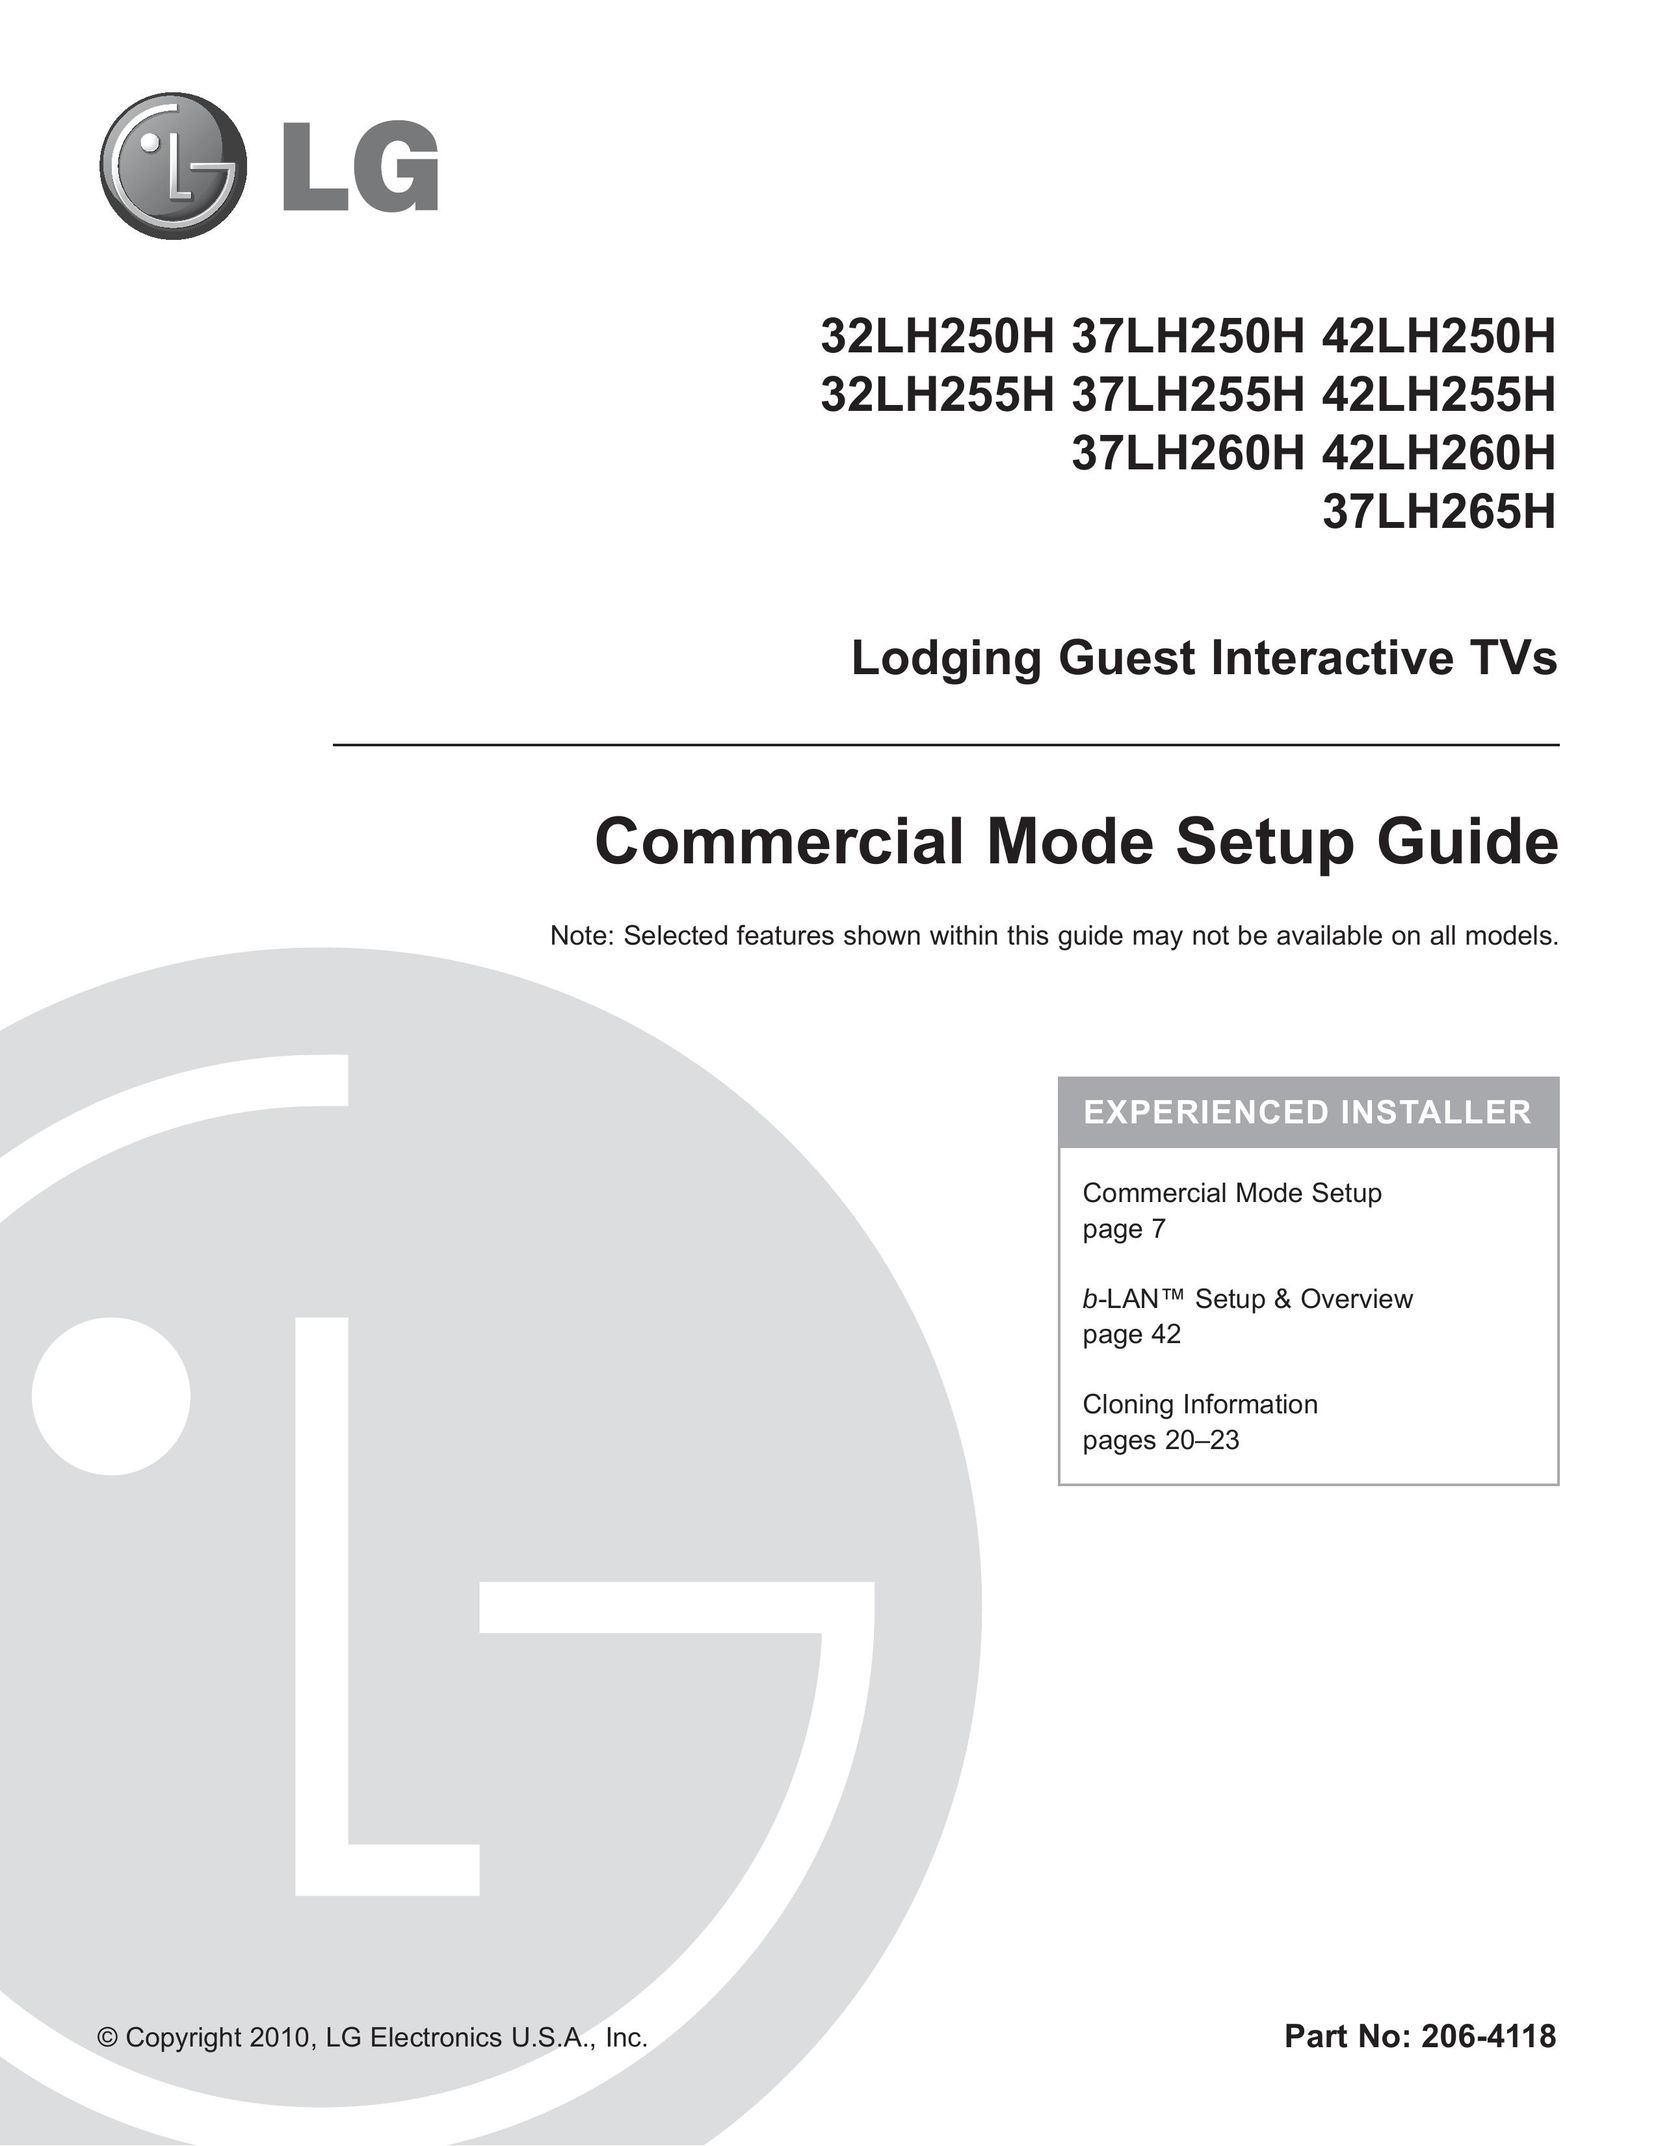 LG Electronics 37LH255H Car Satellite TV System User Manual